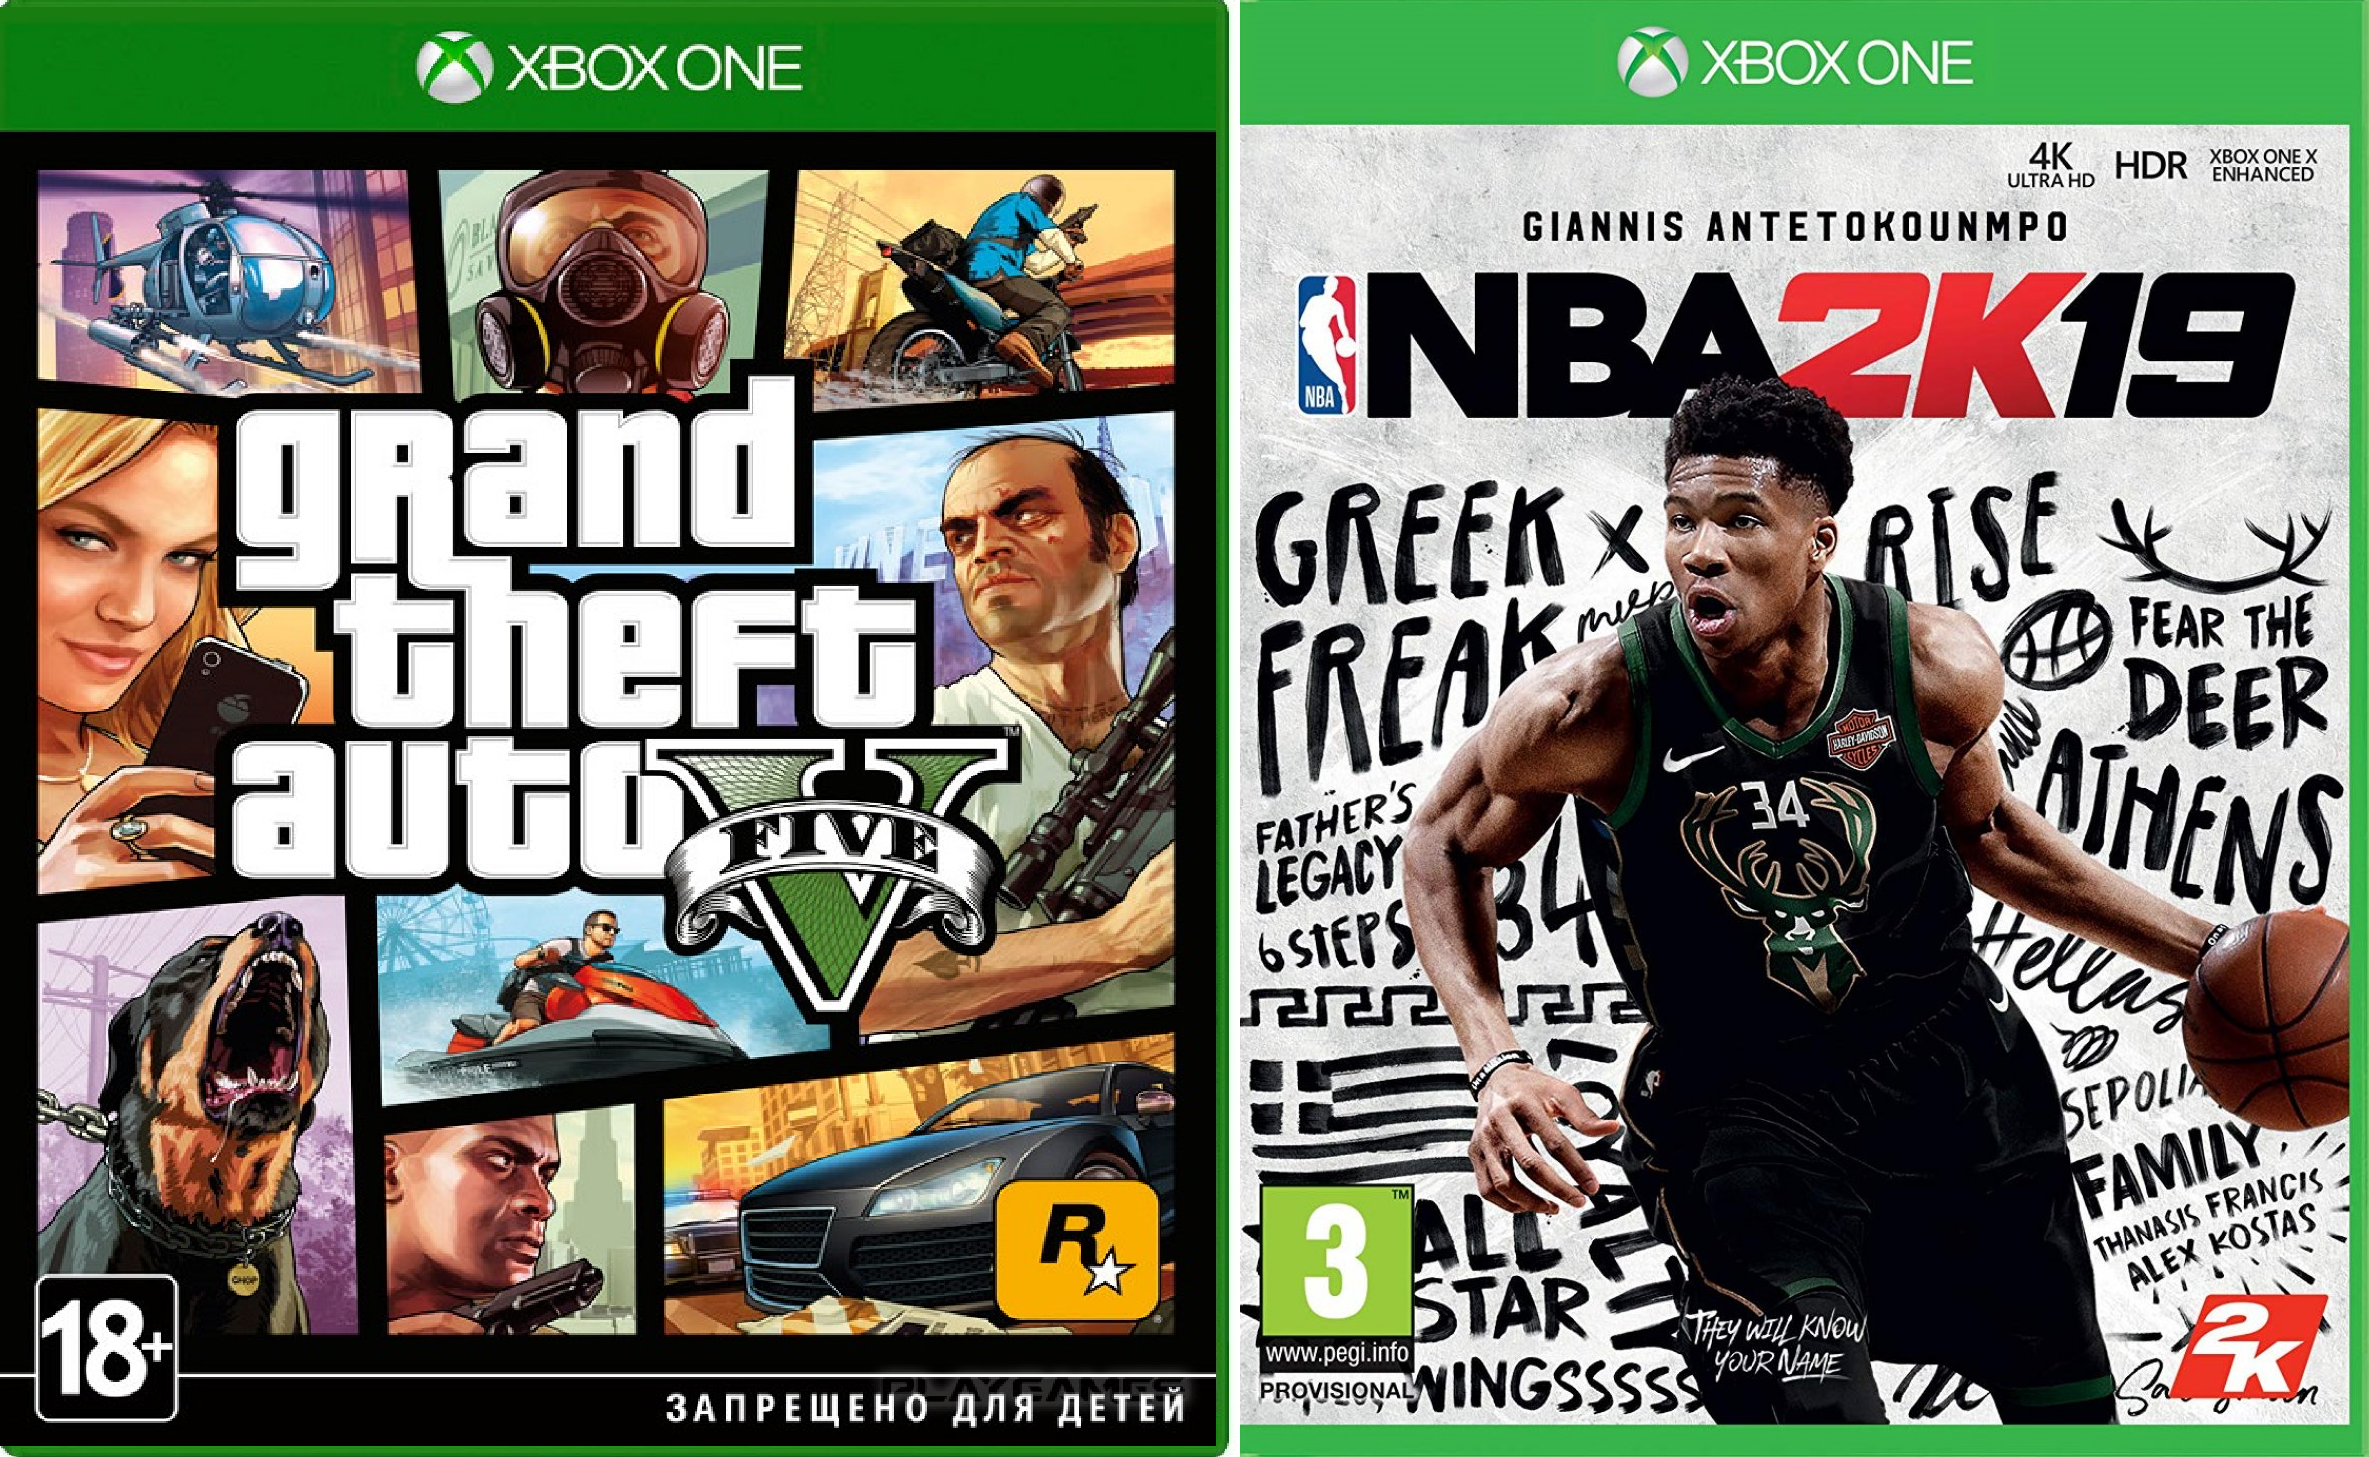 Купить аккаунт xbox one. GTA 5 Xbox 360 обложка. Xbox Series x игры. Аккаунт Xbox с играми. Xbox one s игры аккаунт.